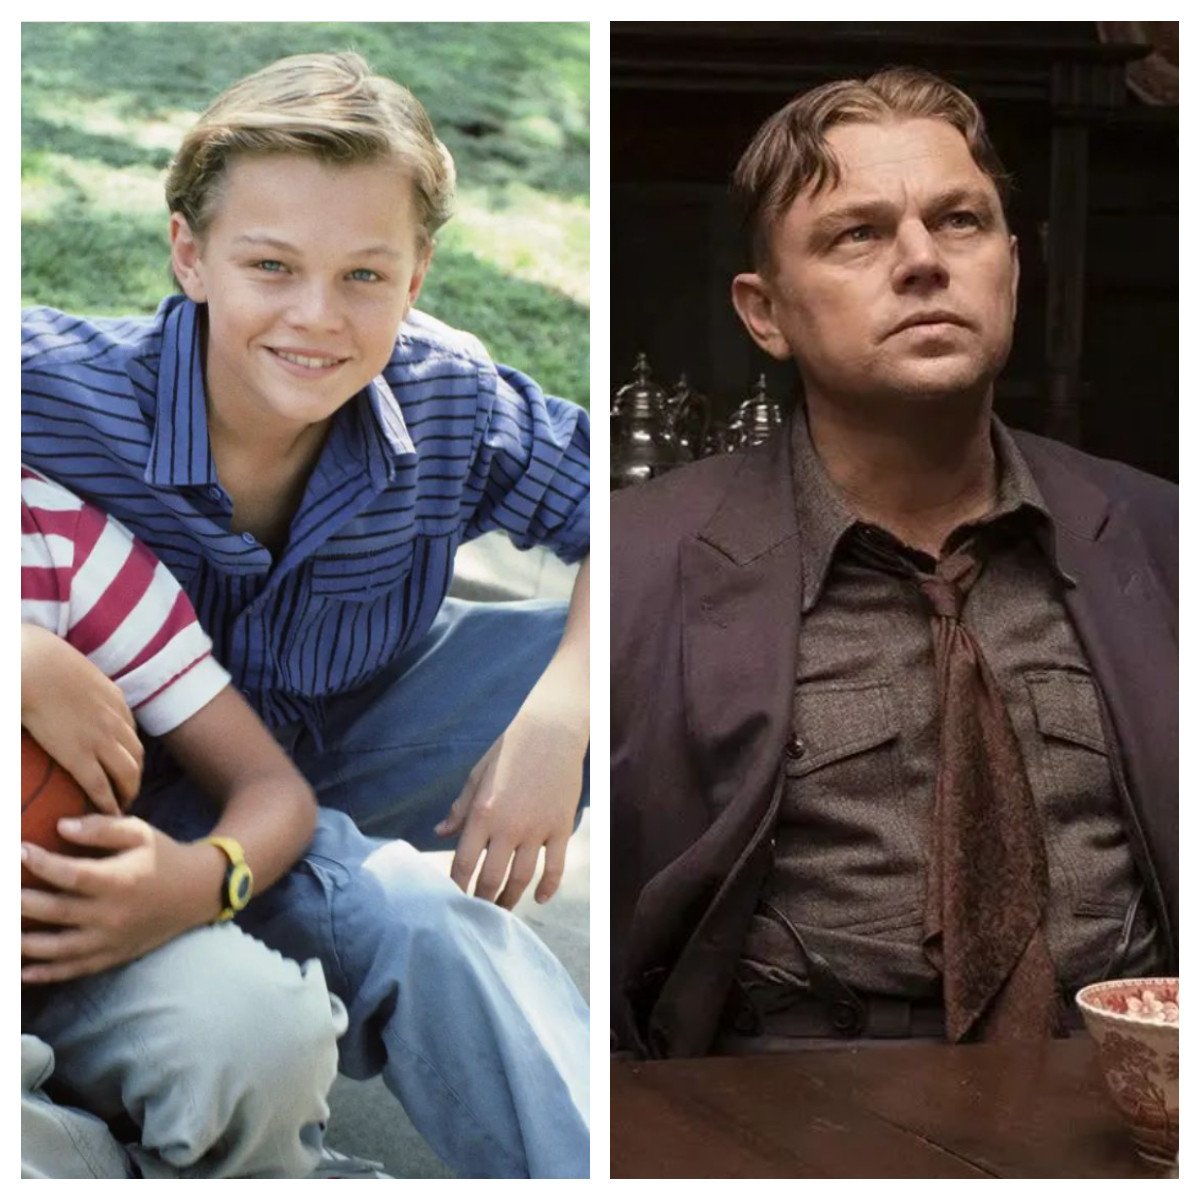 You’ve come a long way, baby: here’s Leonardo Dicaprio’s first role, compared to him now. Photos: @leonardodicapriofanclubldc, @filmthemedium/Instagram